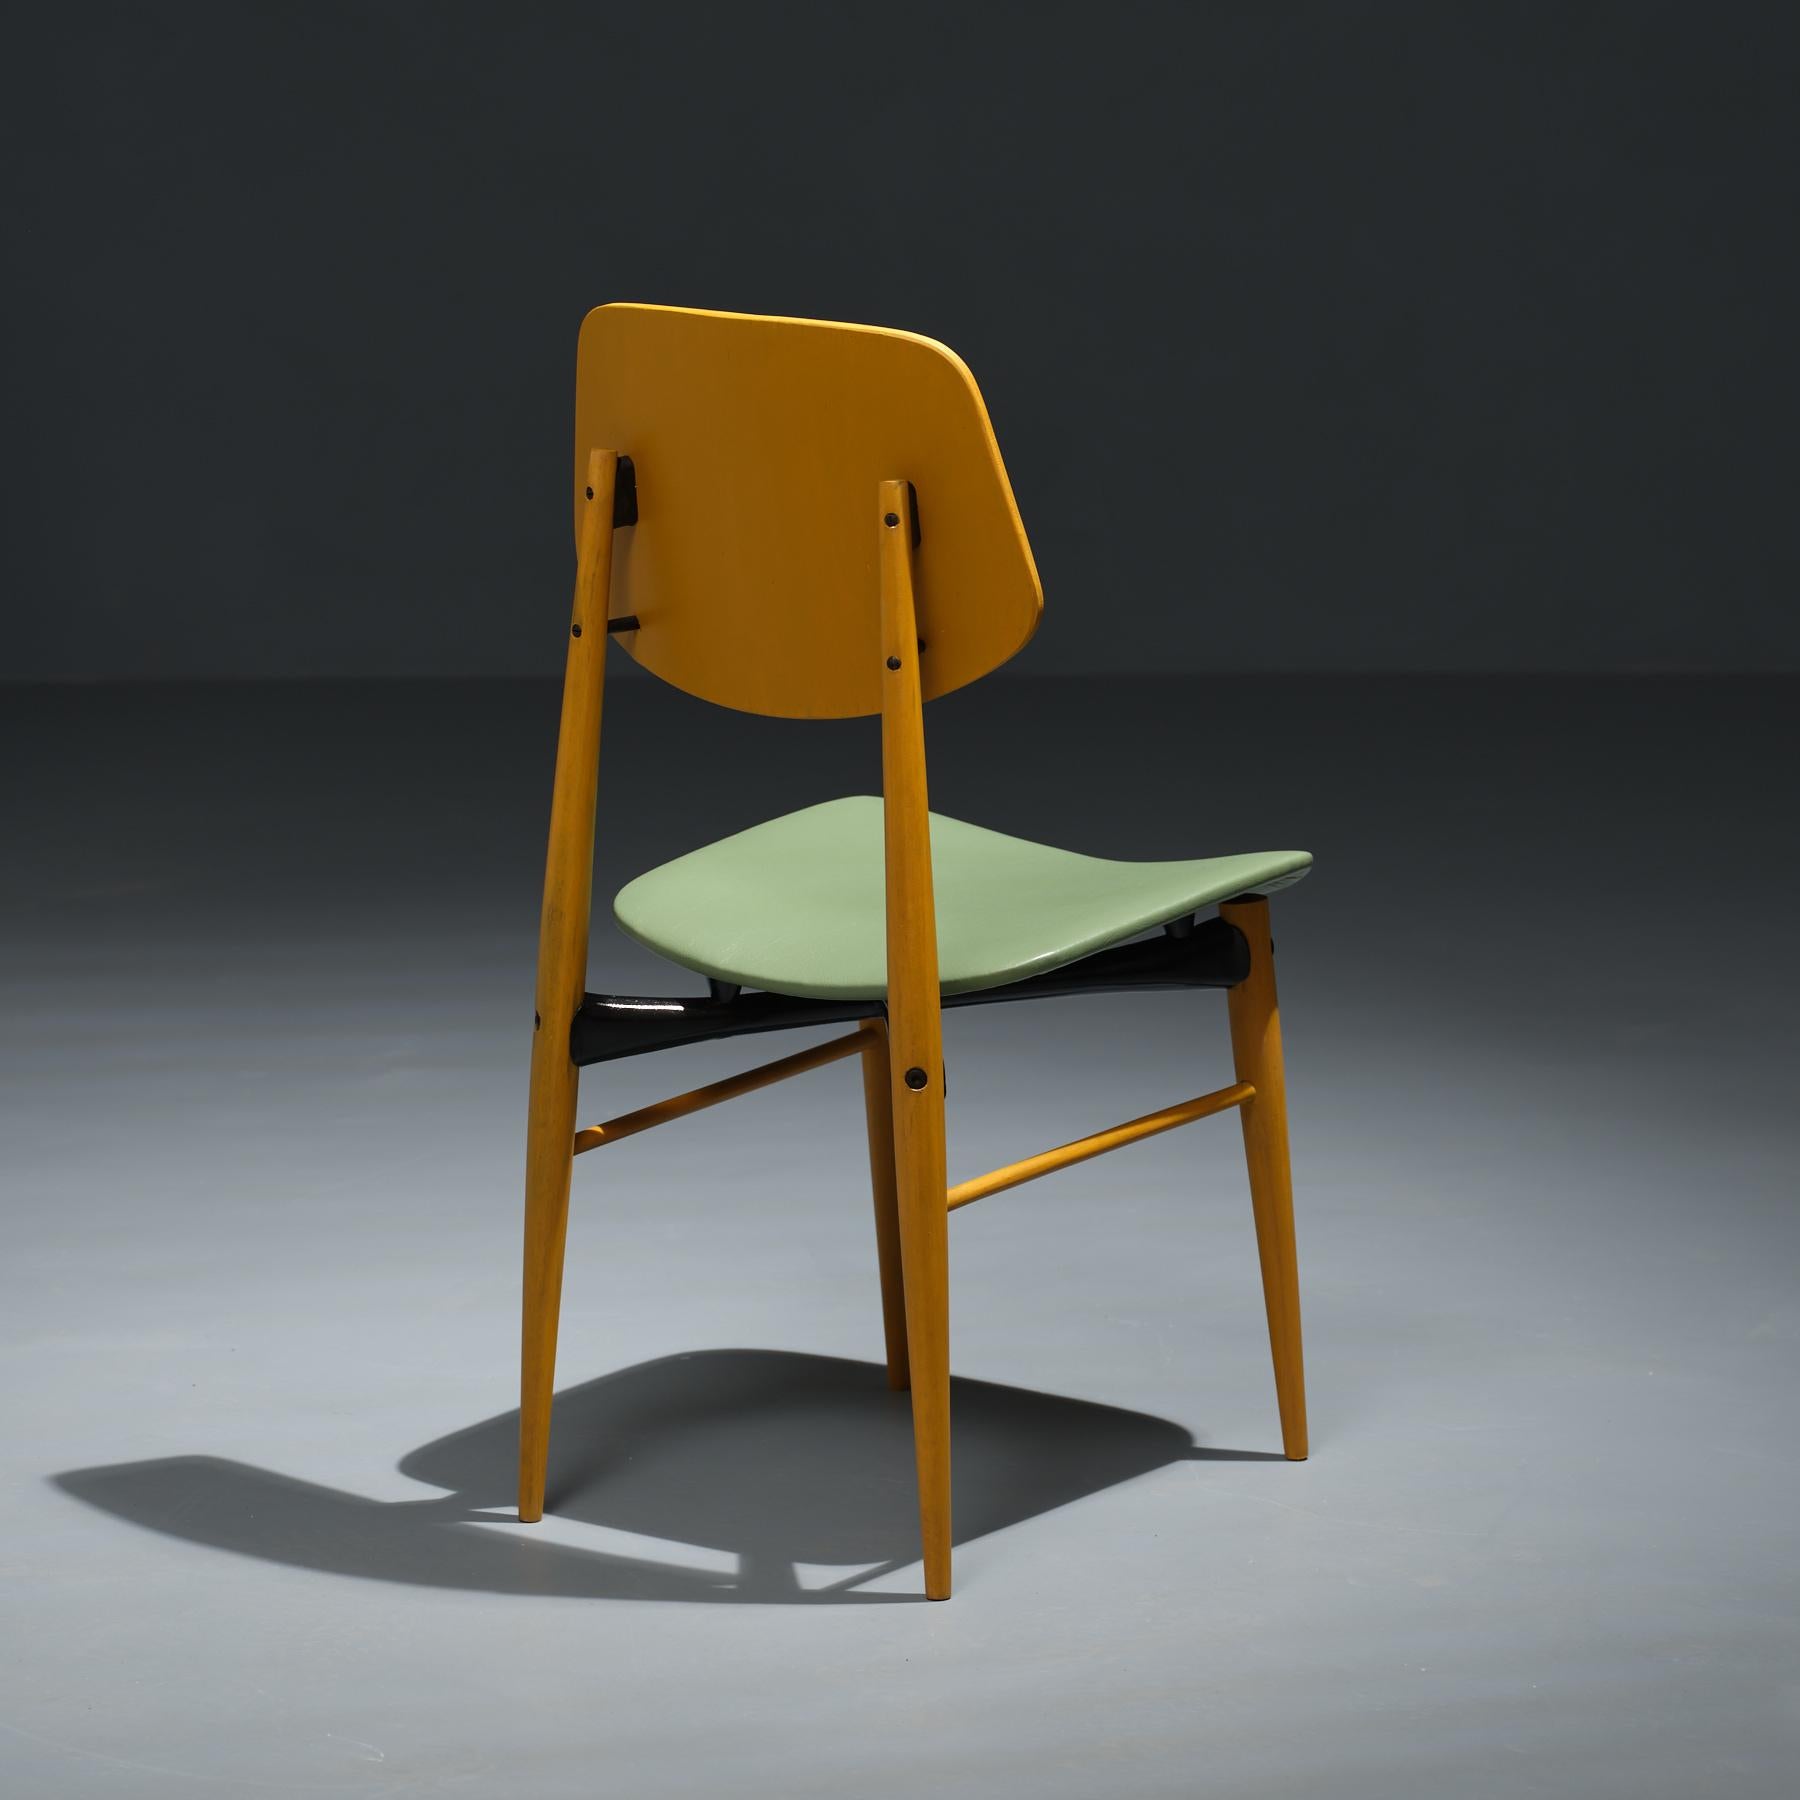 Satz von sechs Esszimmerstühlen, die aus der geschätzten italienischen Handwerkskunst der 1950er Jahre stammen. Jeder Stuhl wurde fachmännisch restauriert und verbindet die zeitlose Eleganz des Designs aus der Mitte des Jahrhunderts mit modernen